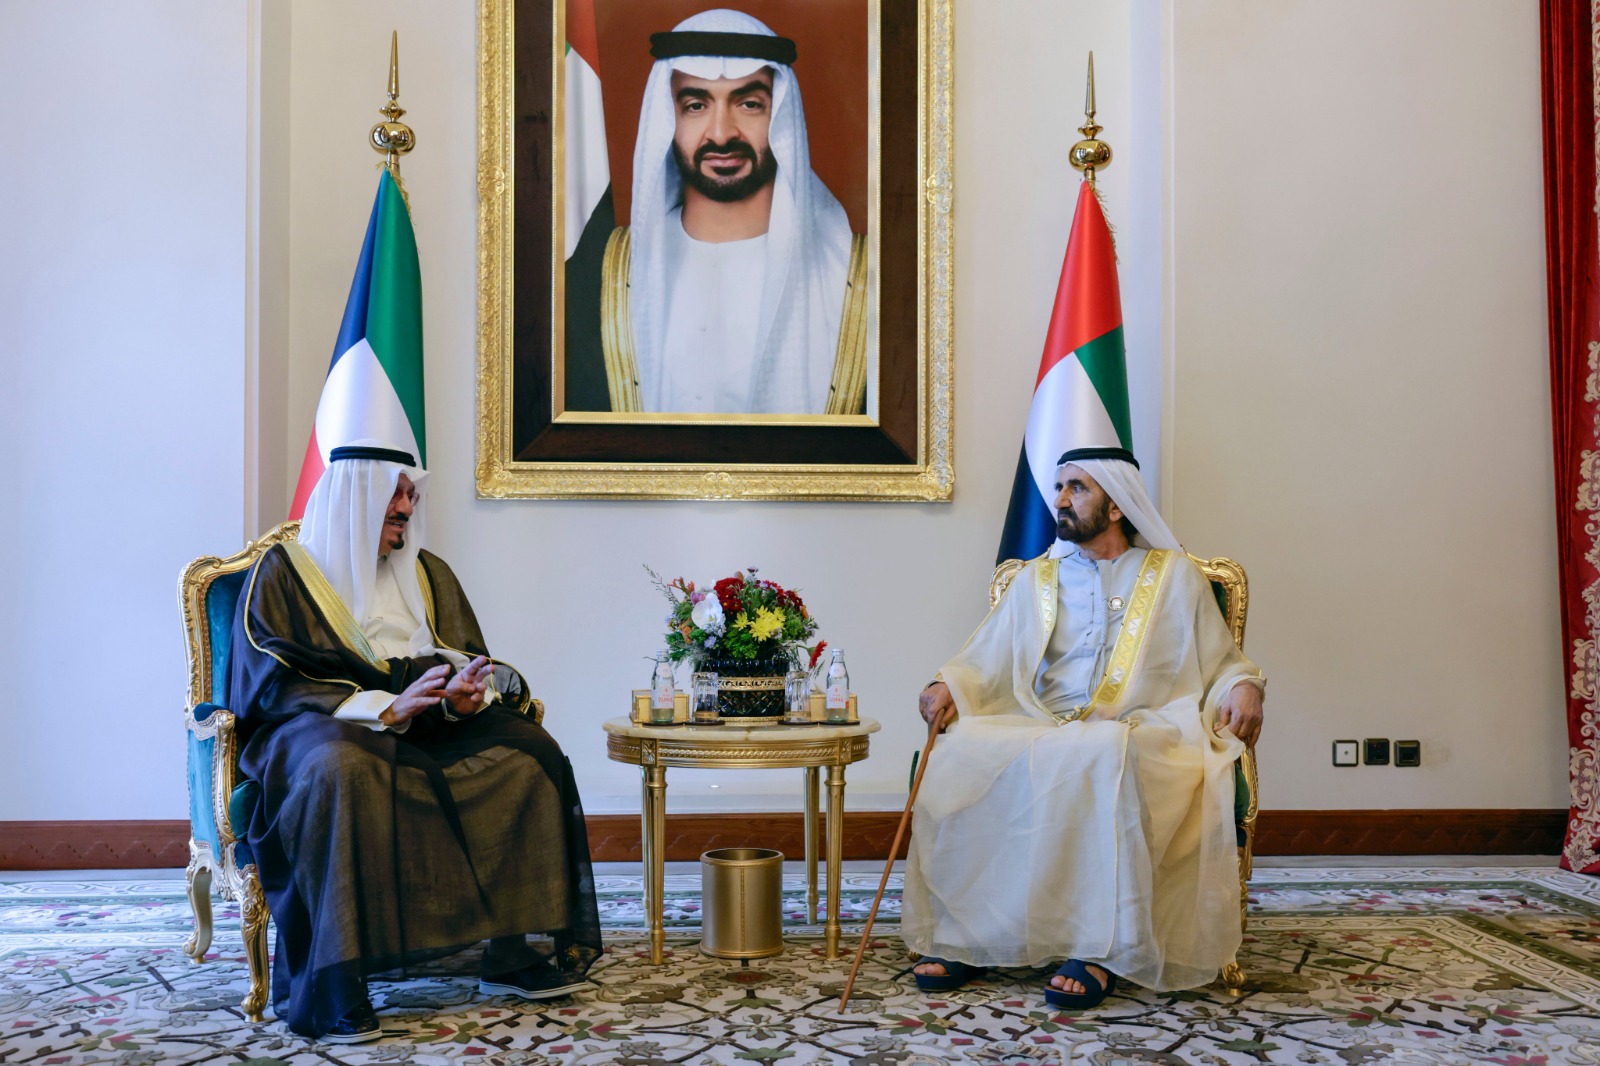 محمد بن راشد يلتقي رئيس مجلس الوزراء الكويتي على هامش القمة العربية